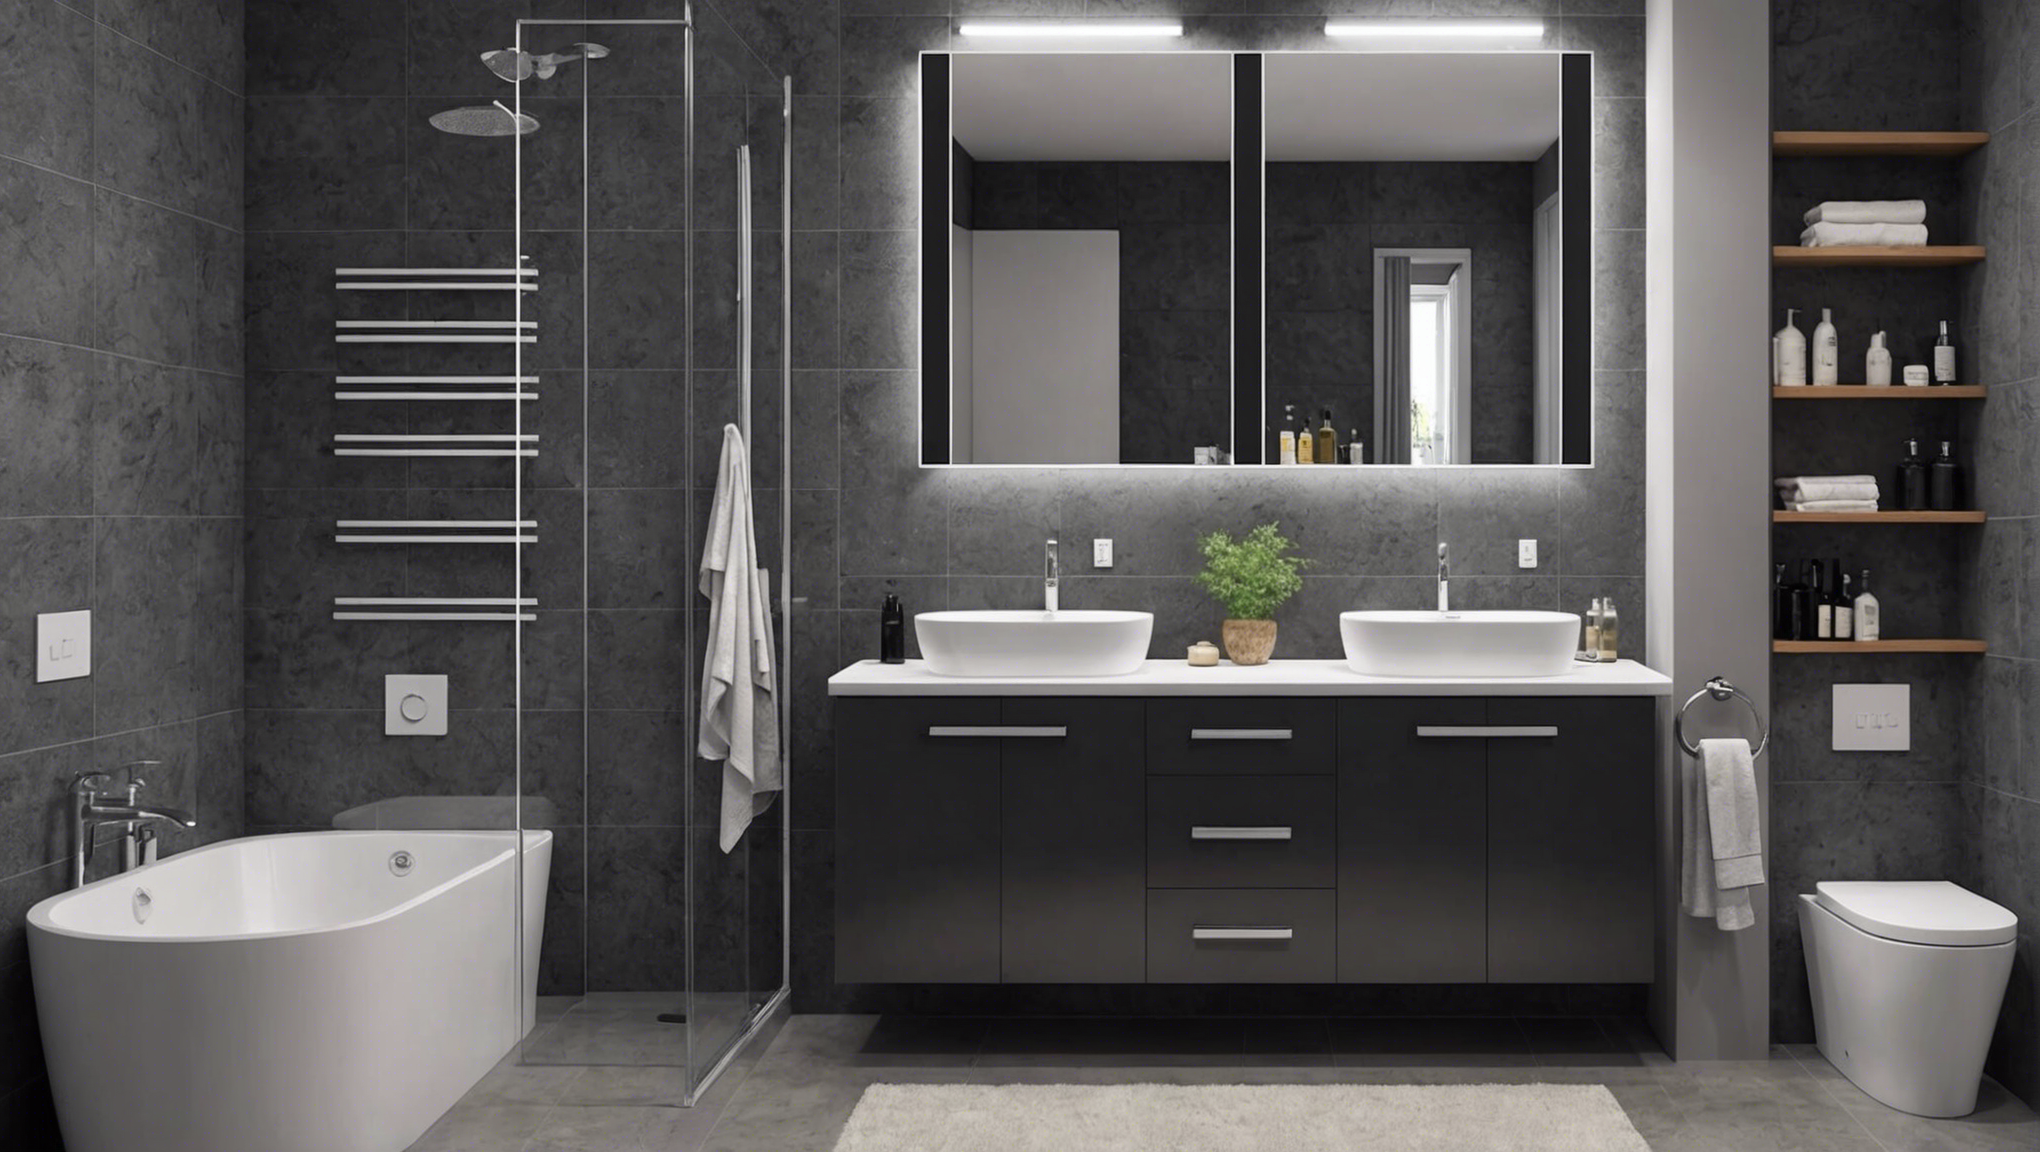 découvrez nos conseils pratiques pour choisir le meuble de salle de bain idéal qui répond à vos besoins et à votre style de décoration.